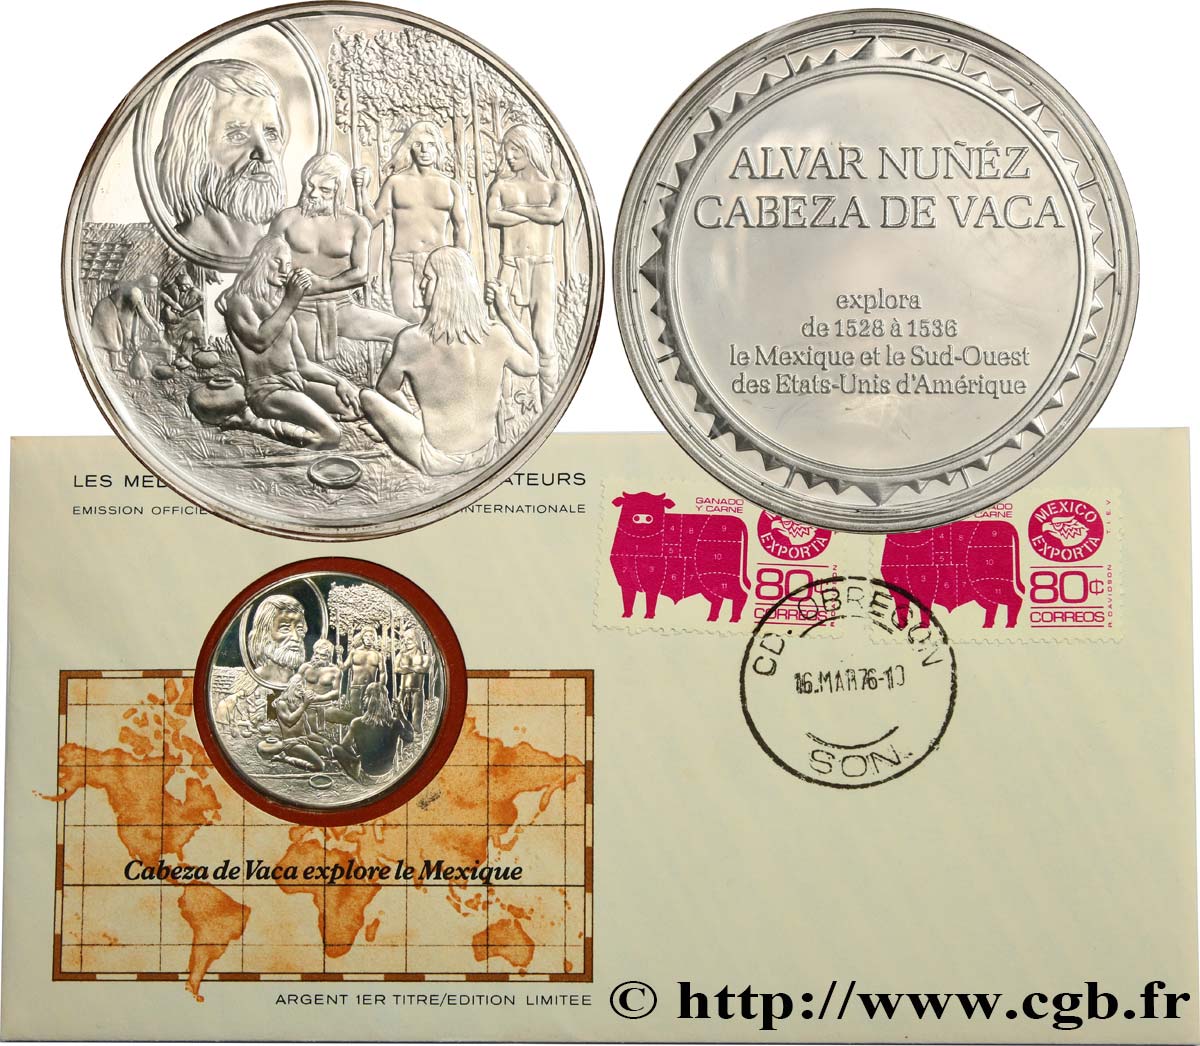 THE GREAT EXPLORERS  MEDALS Enveloppe “Timbre médaille”, Cabeza de Vaca explore le Mexique MS